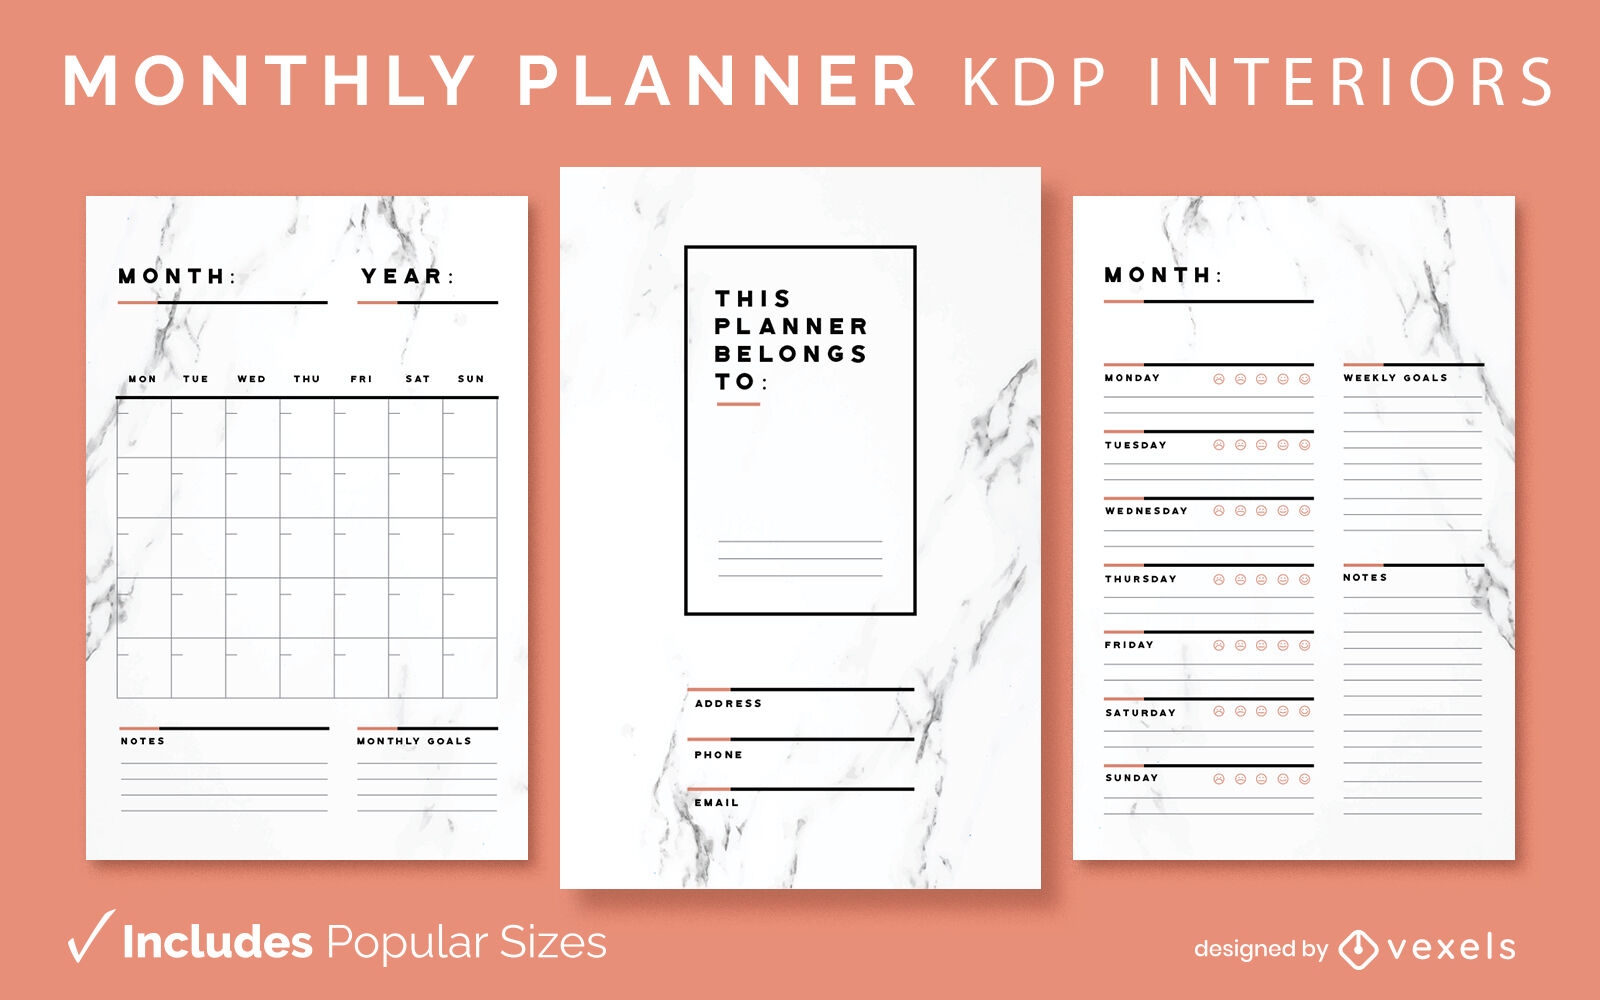 Modelo de interior KDP do planejador mensal Marble